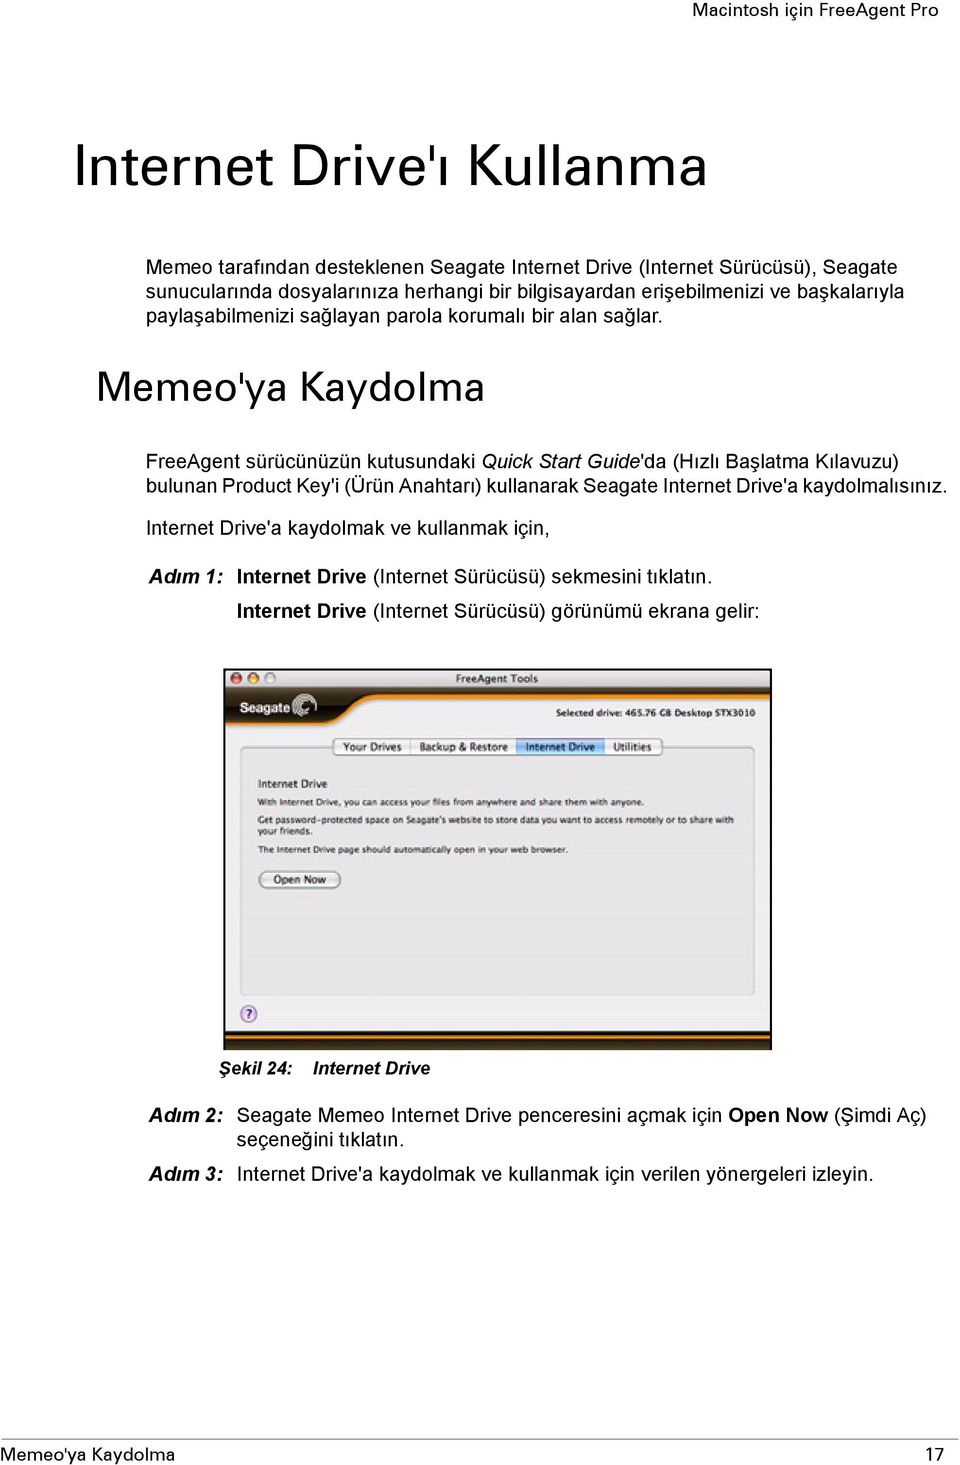 Memeo'ya Kaydolma FreeAgent sürücünüzün kutusundaki Quick Start Guide'da (Hızlı Başlatma Kılavuzu) bulunan Product Key'i (Ürün Anahtarı) kullanarak Seagate Internet Drive'a kaydolmalısınız.